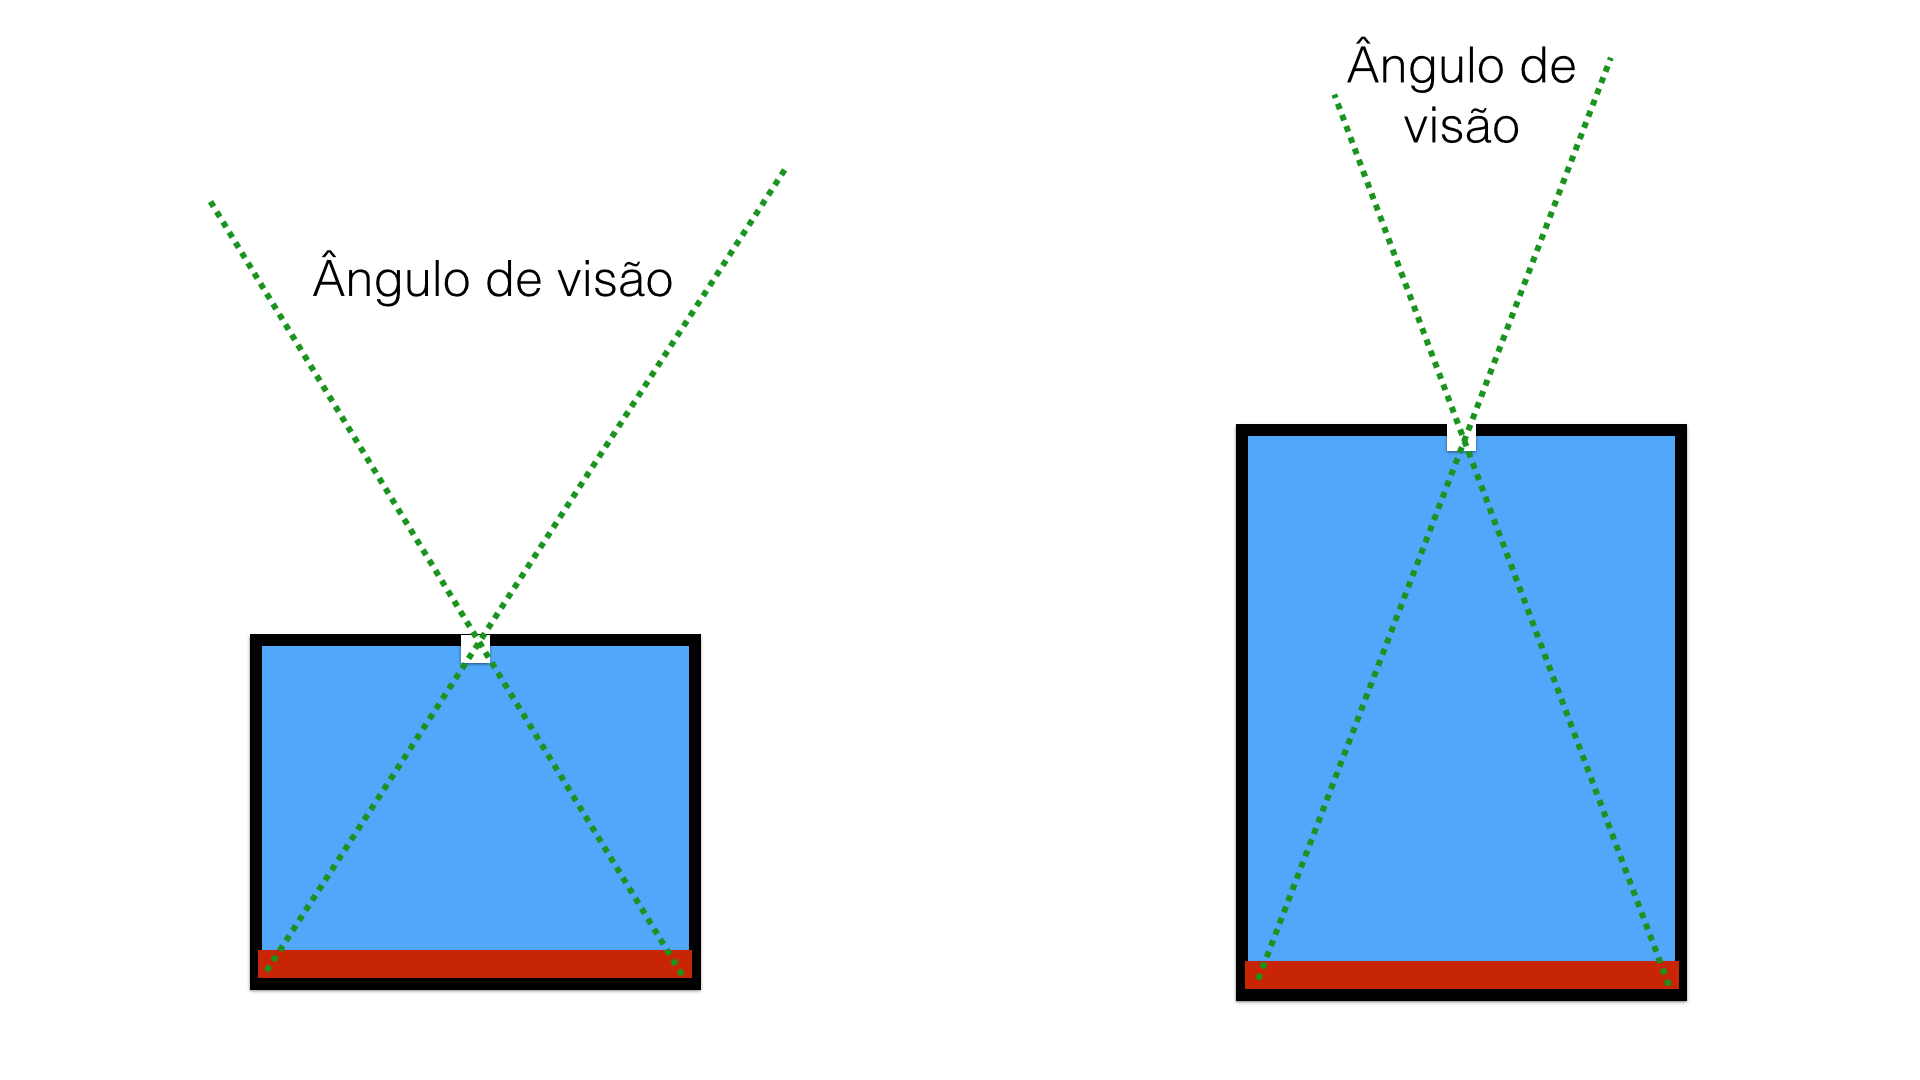 Figura 2: Ângulo de visão de uma câmera fotográfica de furinho.